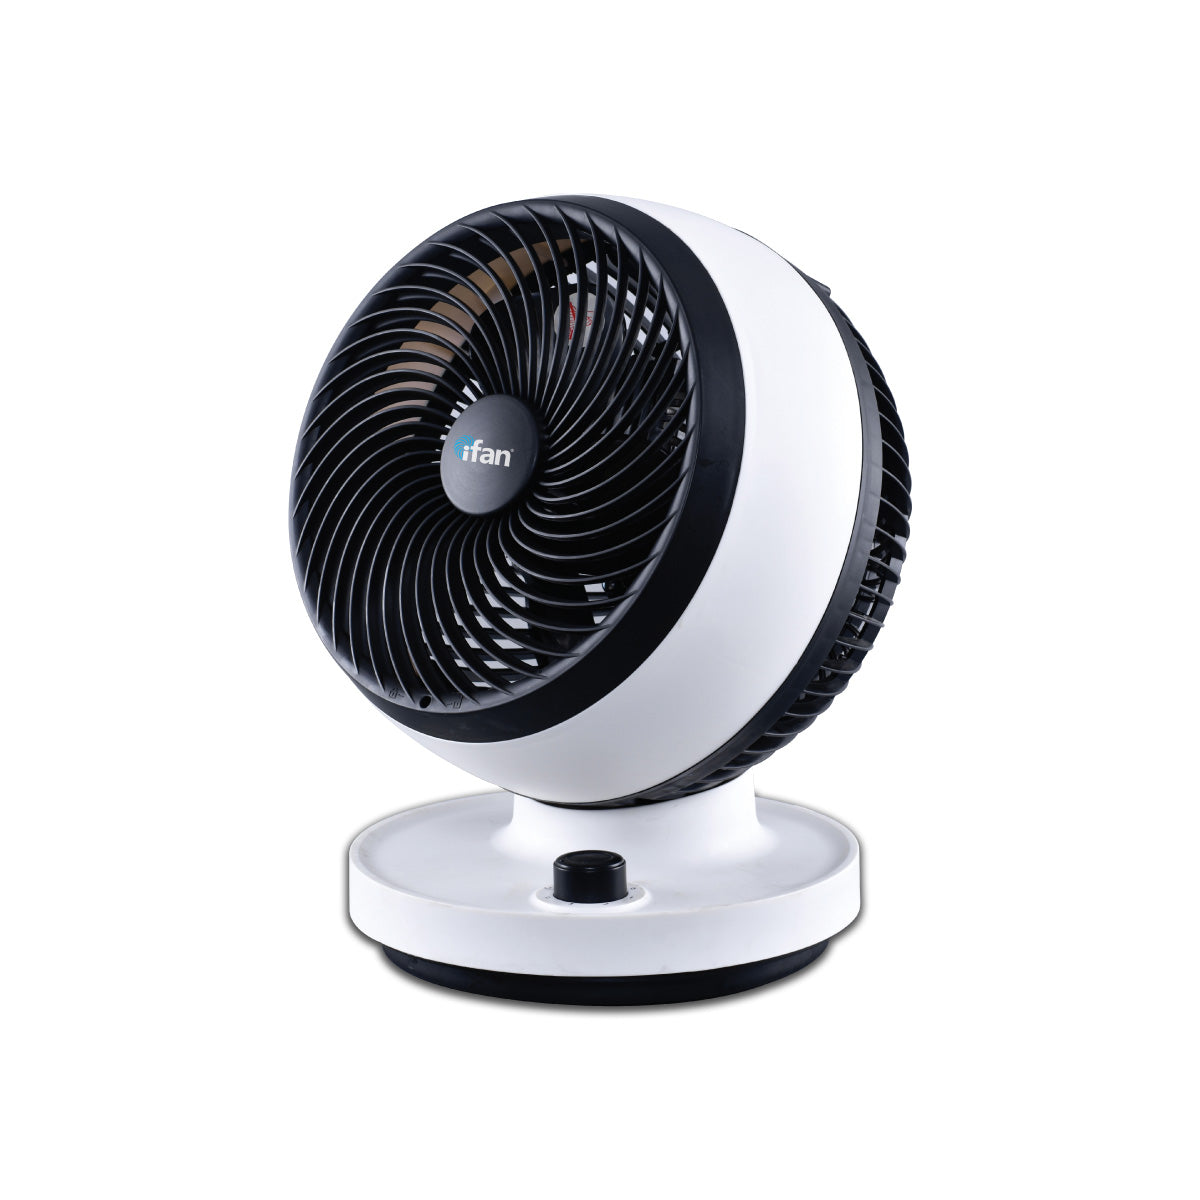 iFan 7&quot; AIR CIRCULATOR TURBOFAN WITH OSCILLATION, Power Fan, Desk Fan, Portable Fan (IF7530)